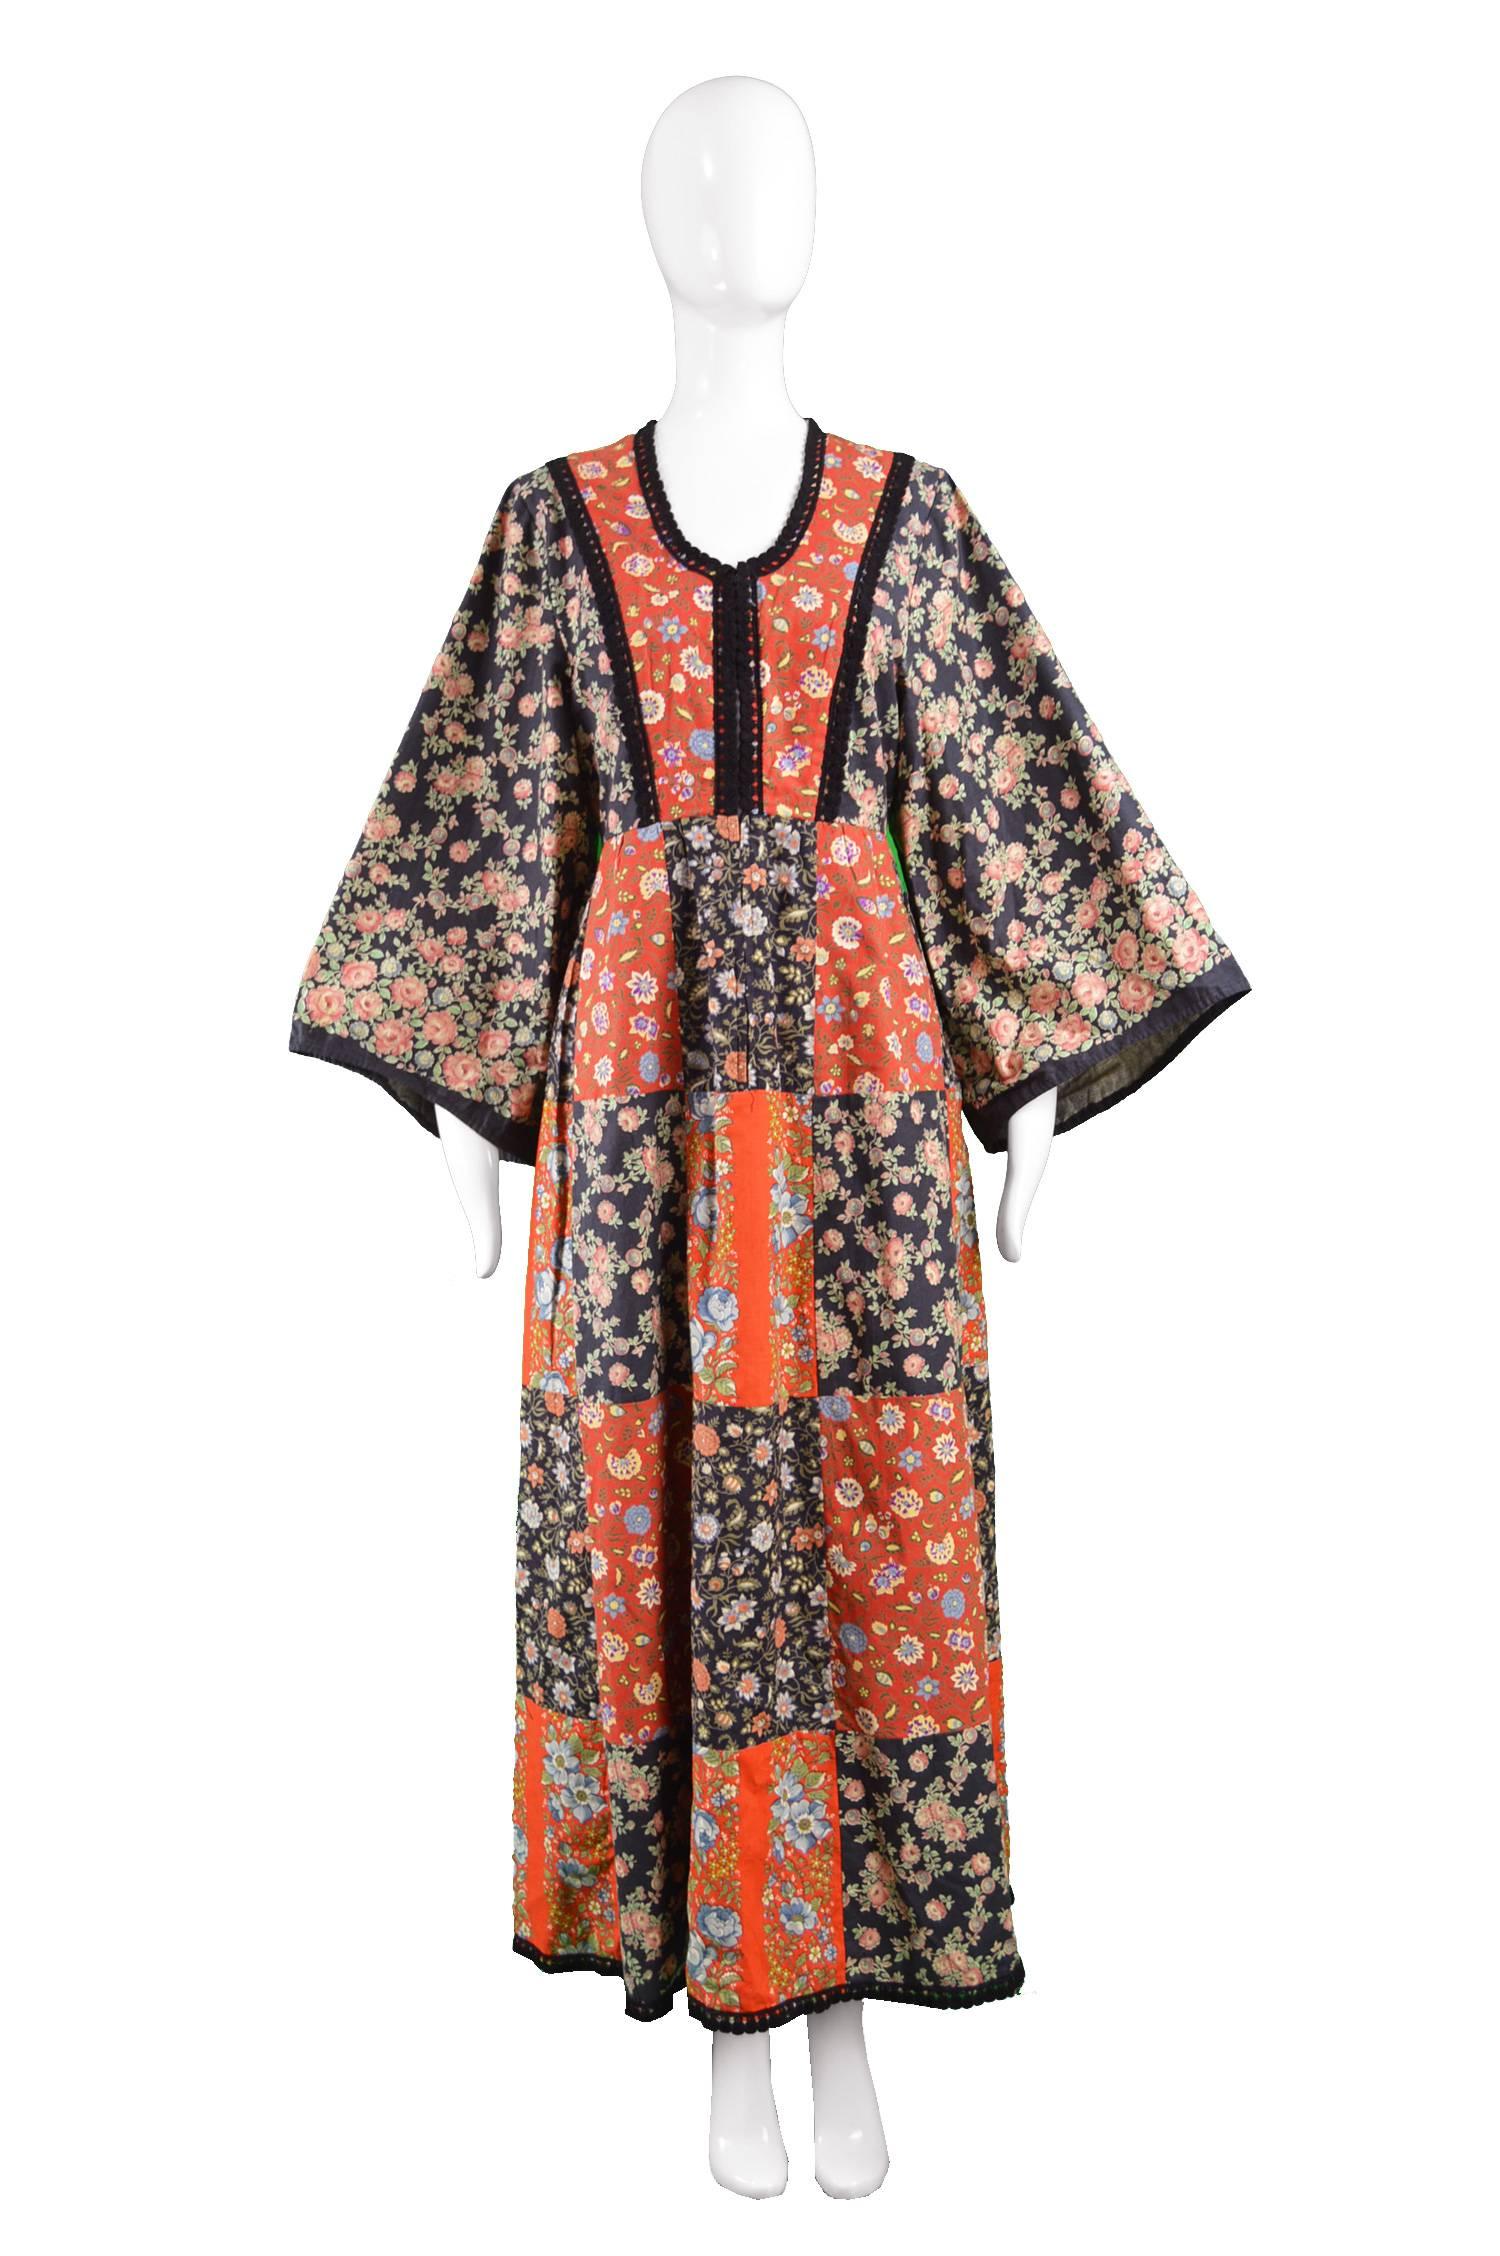 Angela Gore Vintage Patchwork Floral Print Cotton Maxi Kimono Dress, 1970s

Estimated Size: UK 12/ US 8/EU 40. Please check measurements.
Bust - 36” / 91cm
Waist - 32” / 81cm
Hips - Free
Length (Shoulder to Hem) - 54” / 137cm
Shoulder to Shoulder -